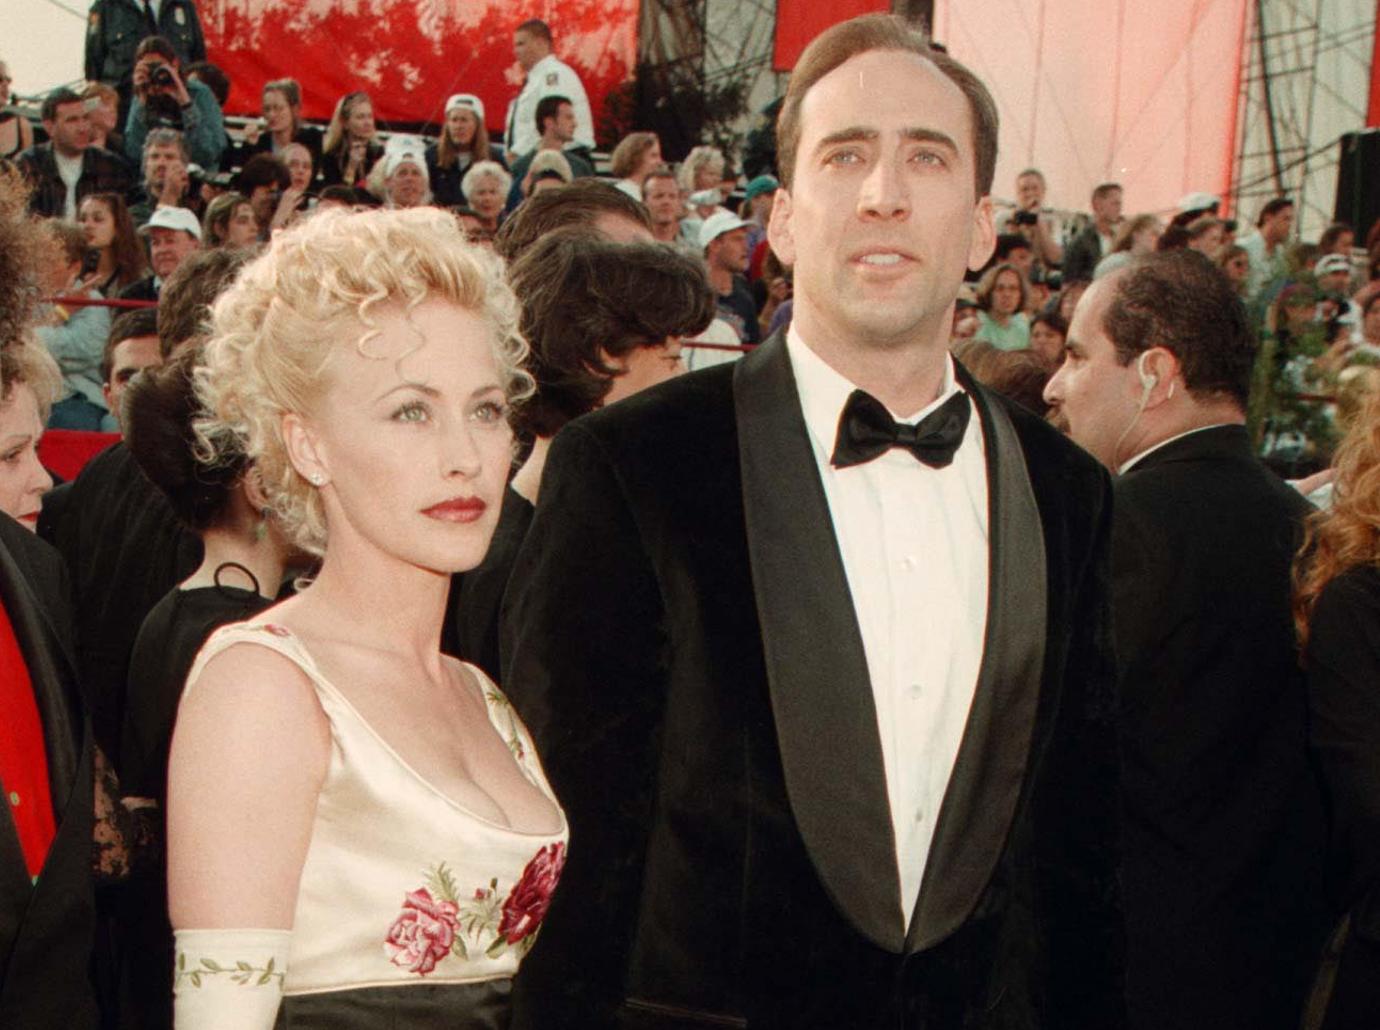 Nicholas Cage and Patricia Arquette